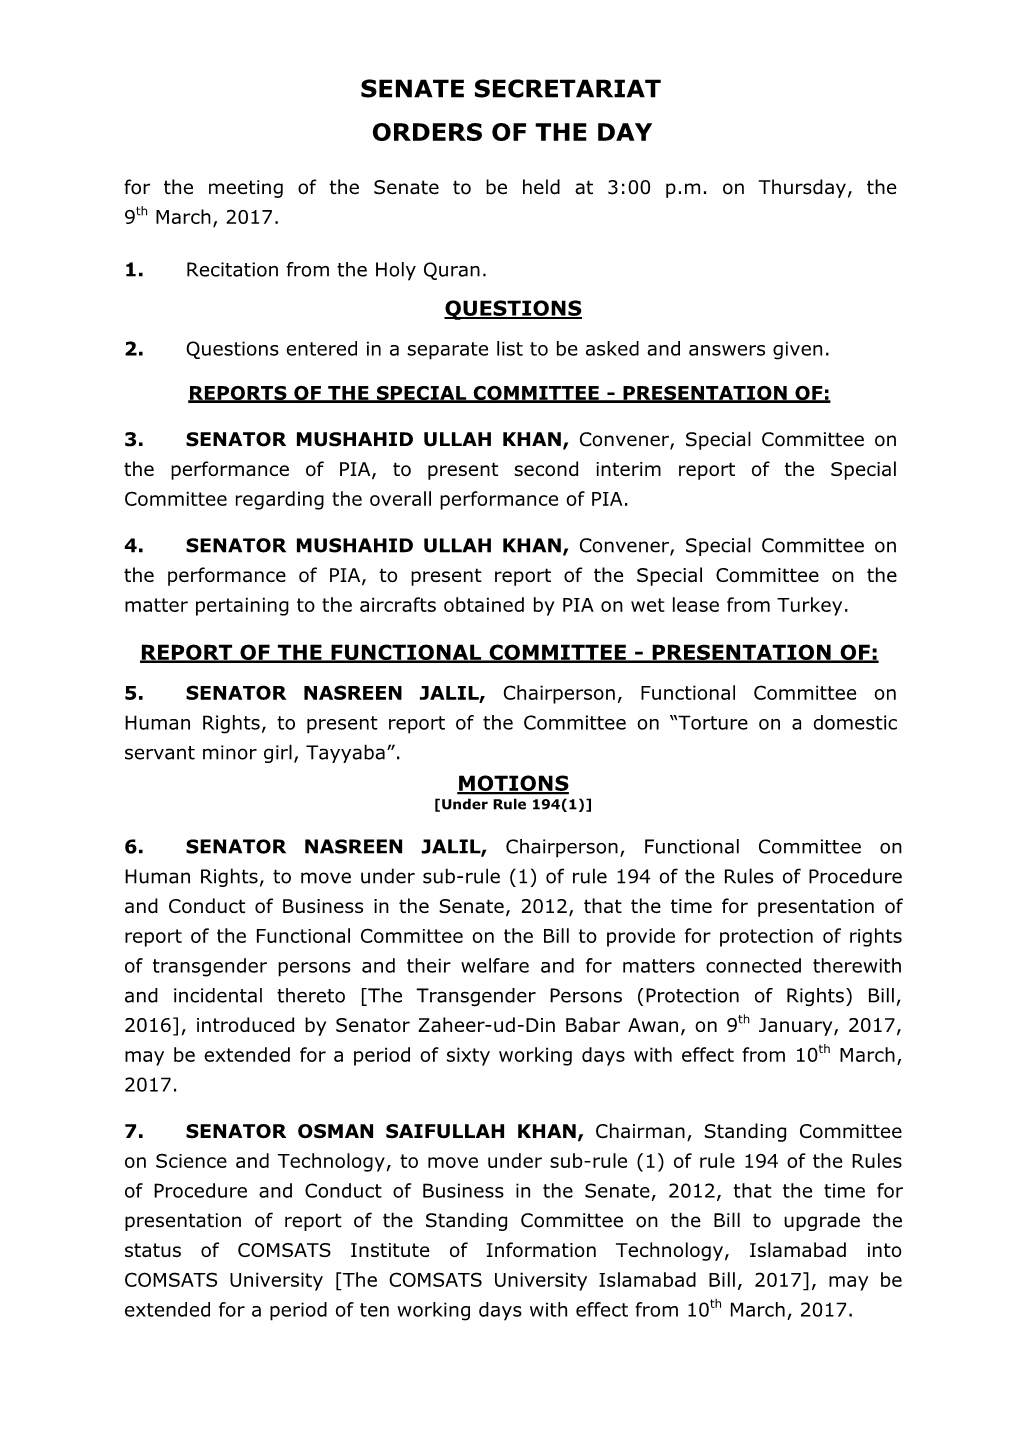 Senate Secretariat Orders of the Day